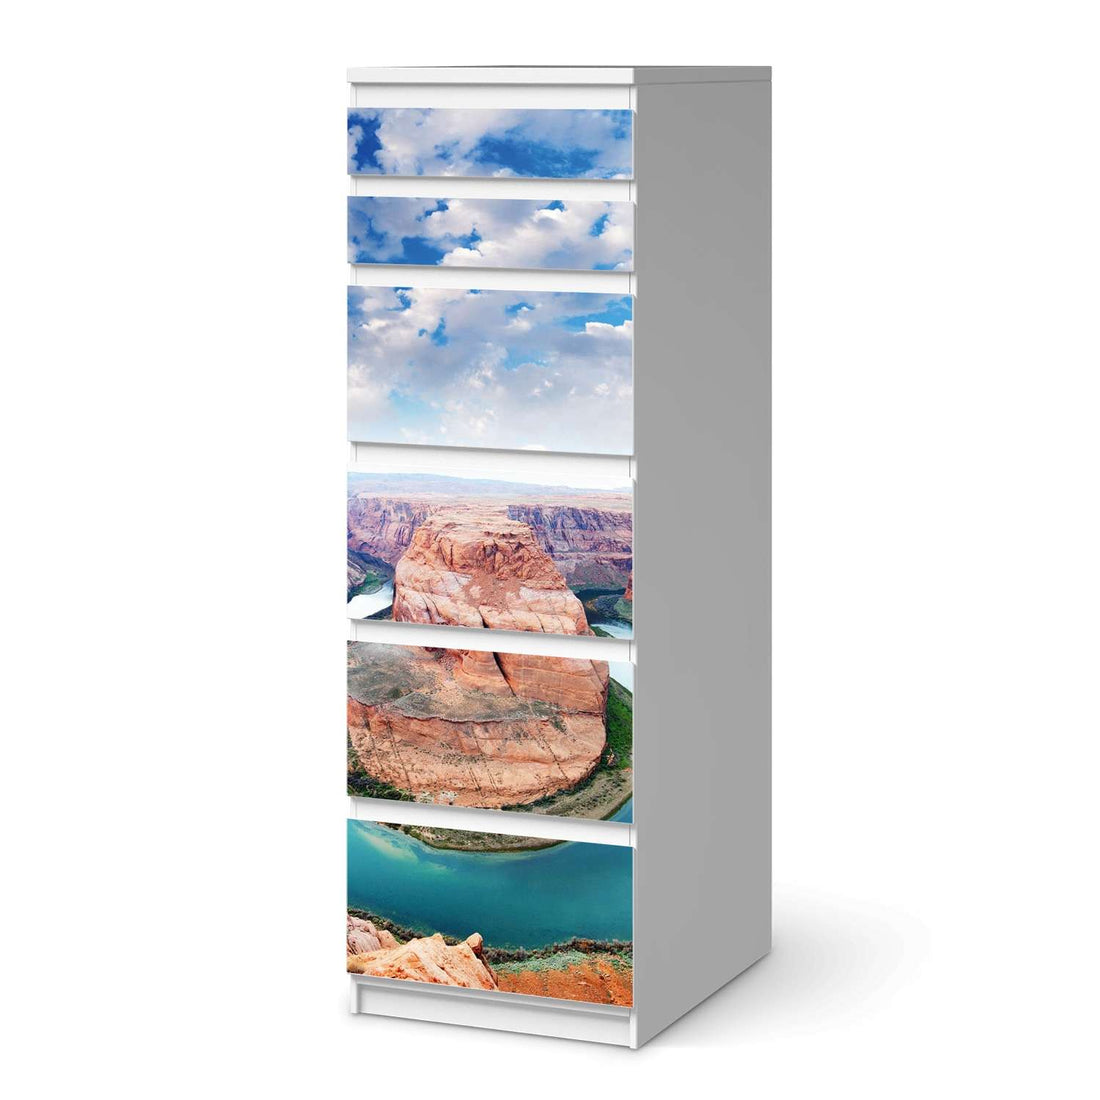 Klebefolie Grand Canyon - IKEA Malm Kommode 6 Schubladen (schmal)  - weiss